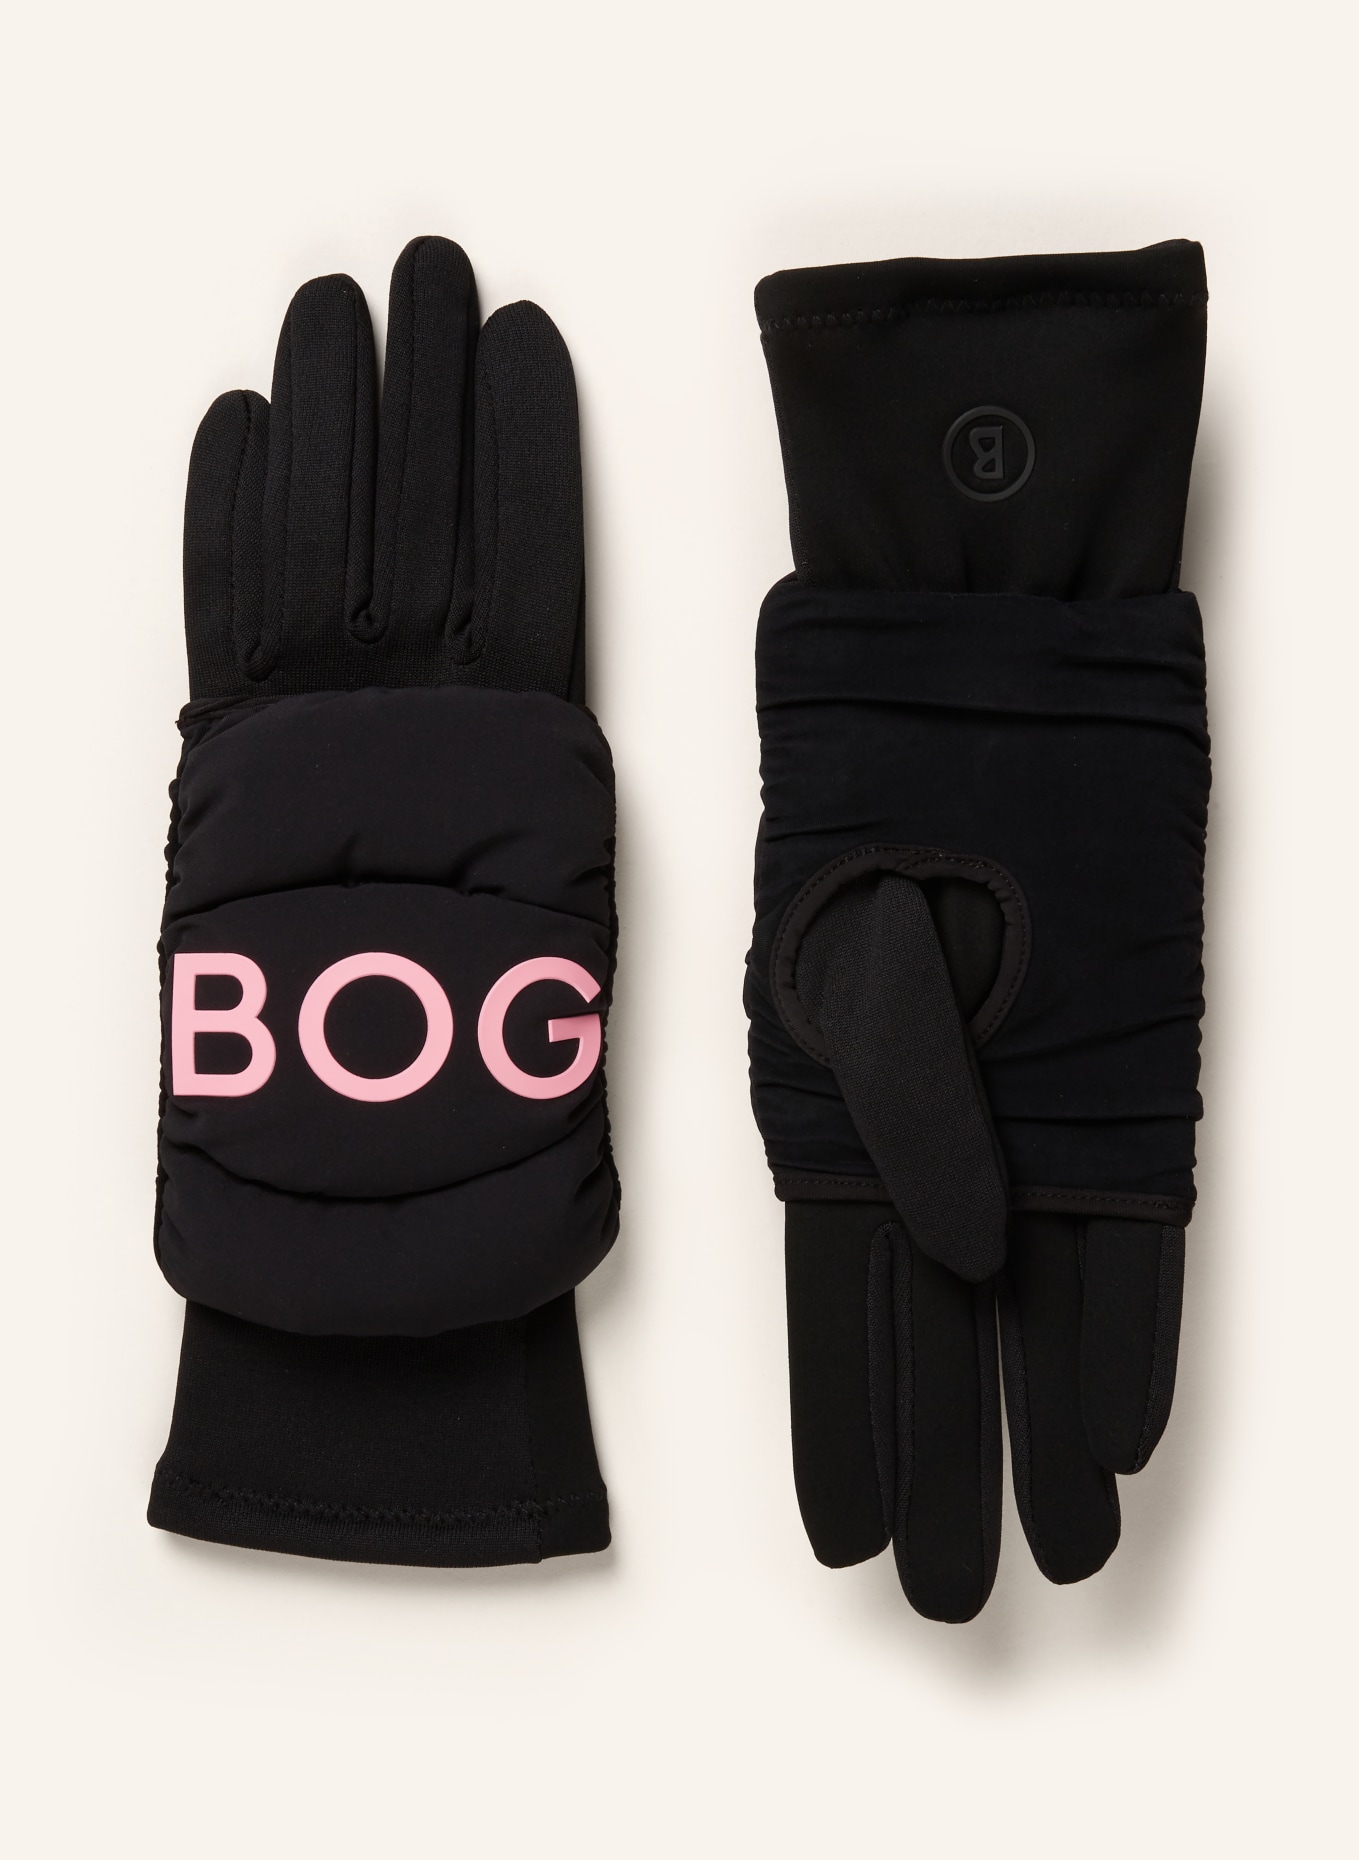 BOGNER 2-in-1-Handschuhe TOUCH mit Touchscreen-Funktion, Farbe: SCHWARZ/ ROSA (Bild 1)